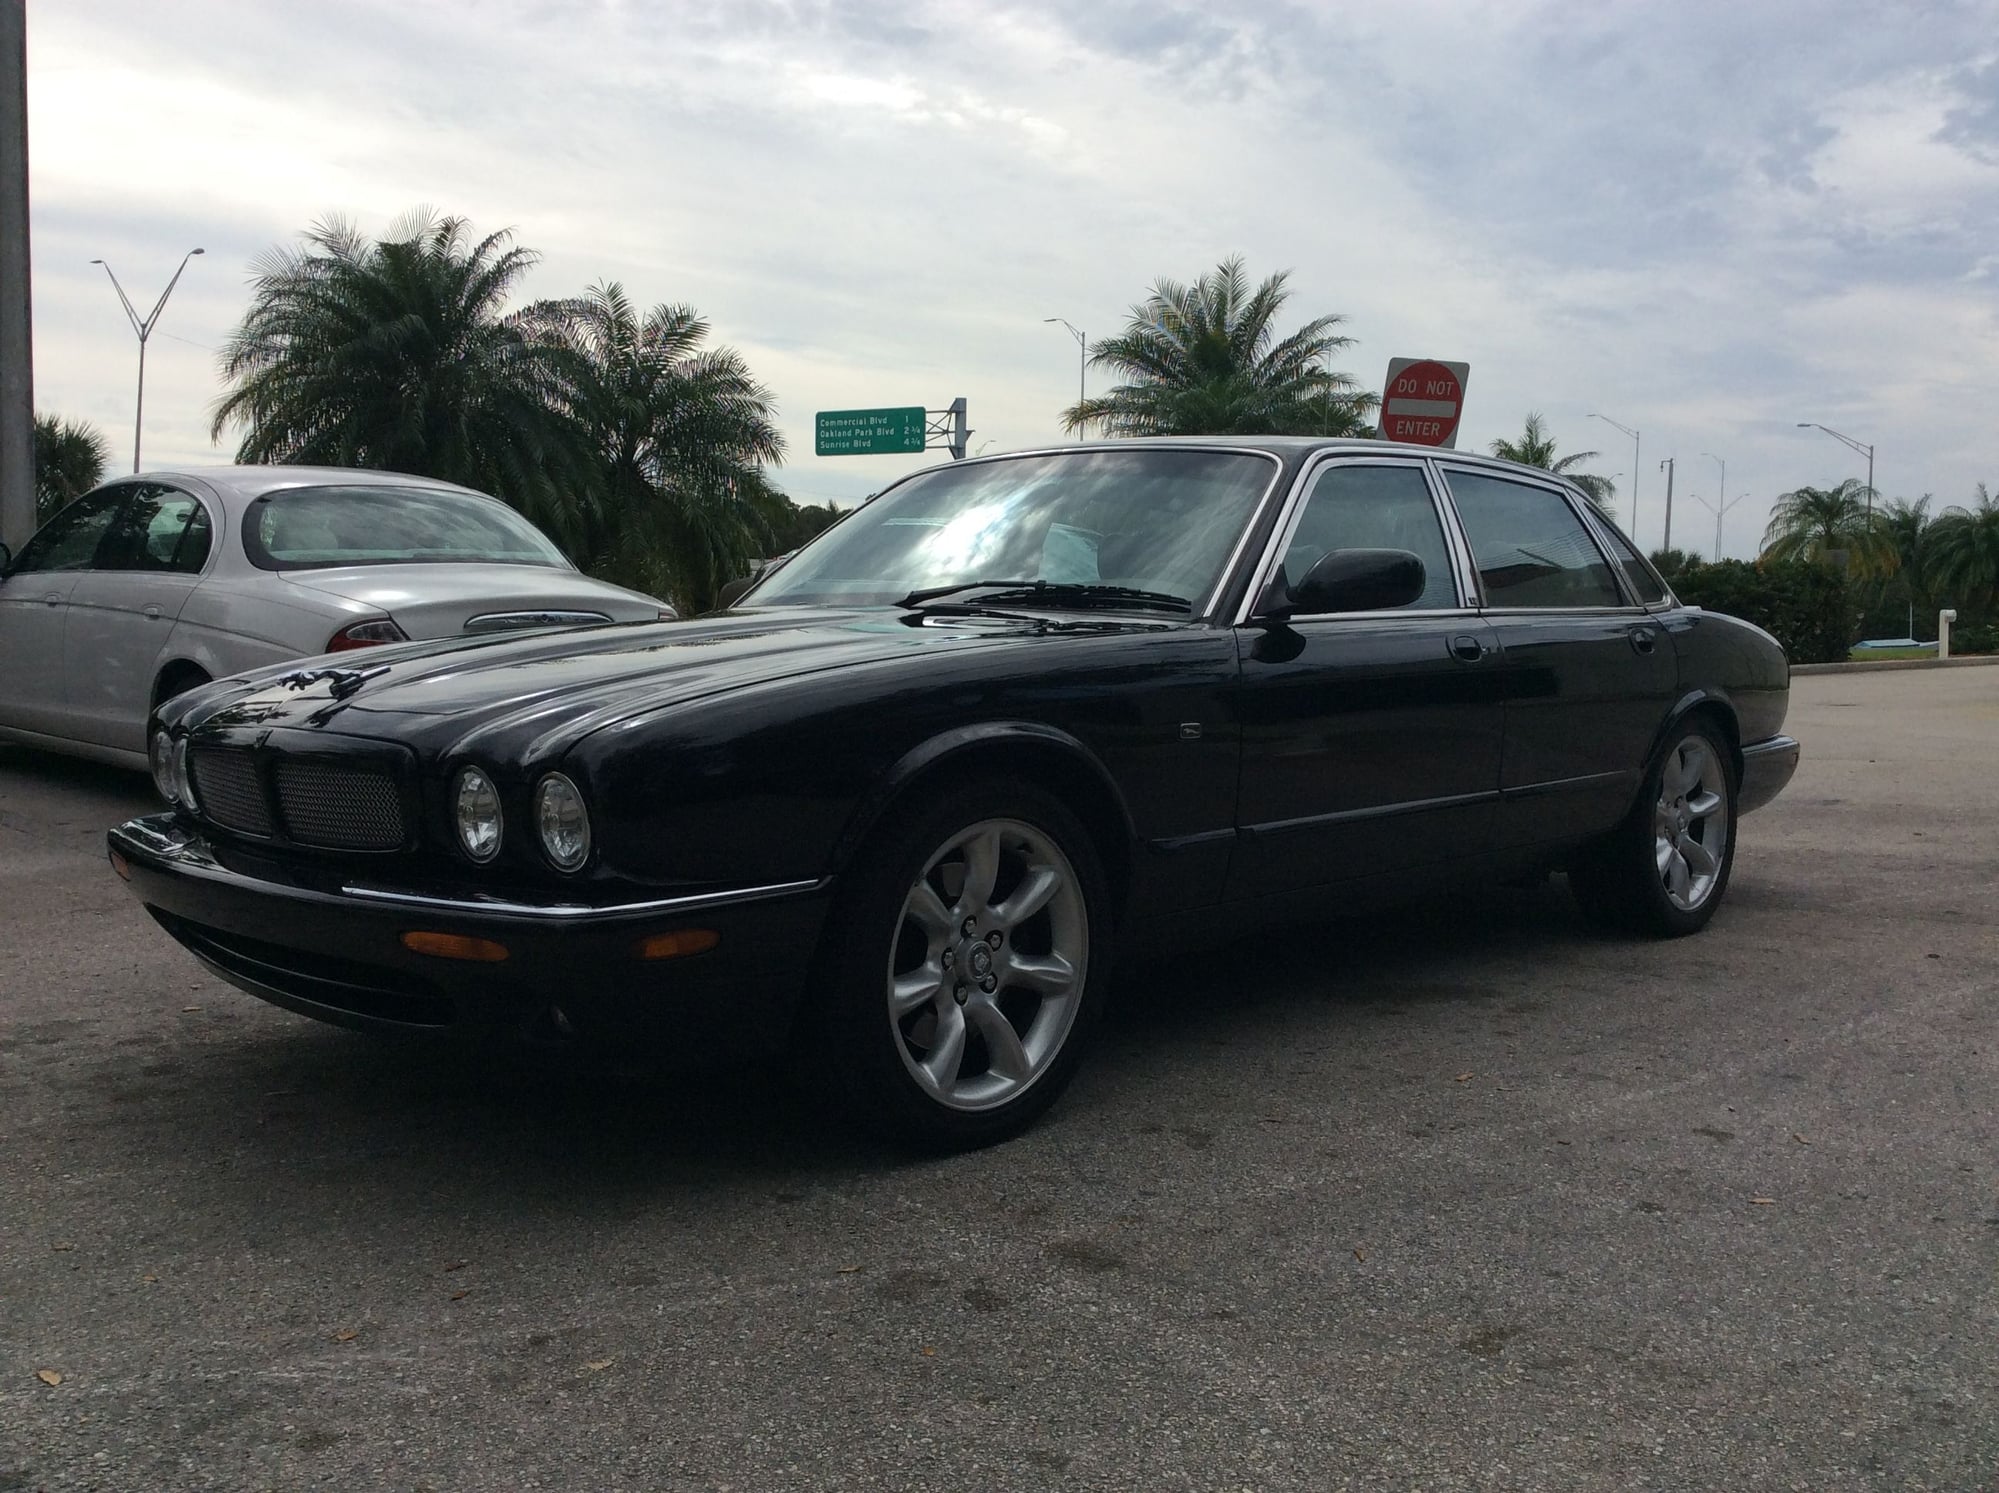 2001 Jaguar XJR - 2001 XJR - Used - VIN sajda15b71mf26722 - 110,000 Miles - 8 cyl - 2WD - Automatic - Sedan - Black - West Palm Beach, FL 33467, United States